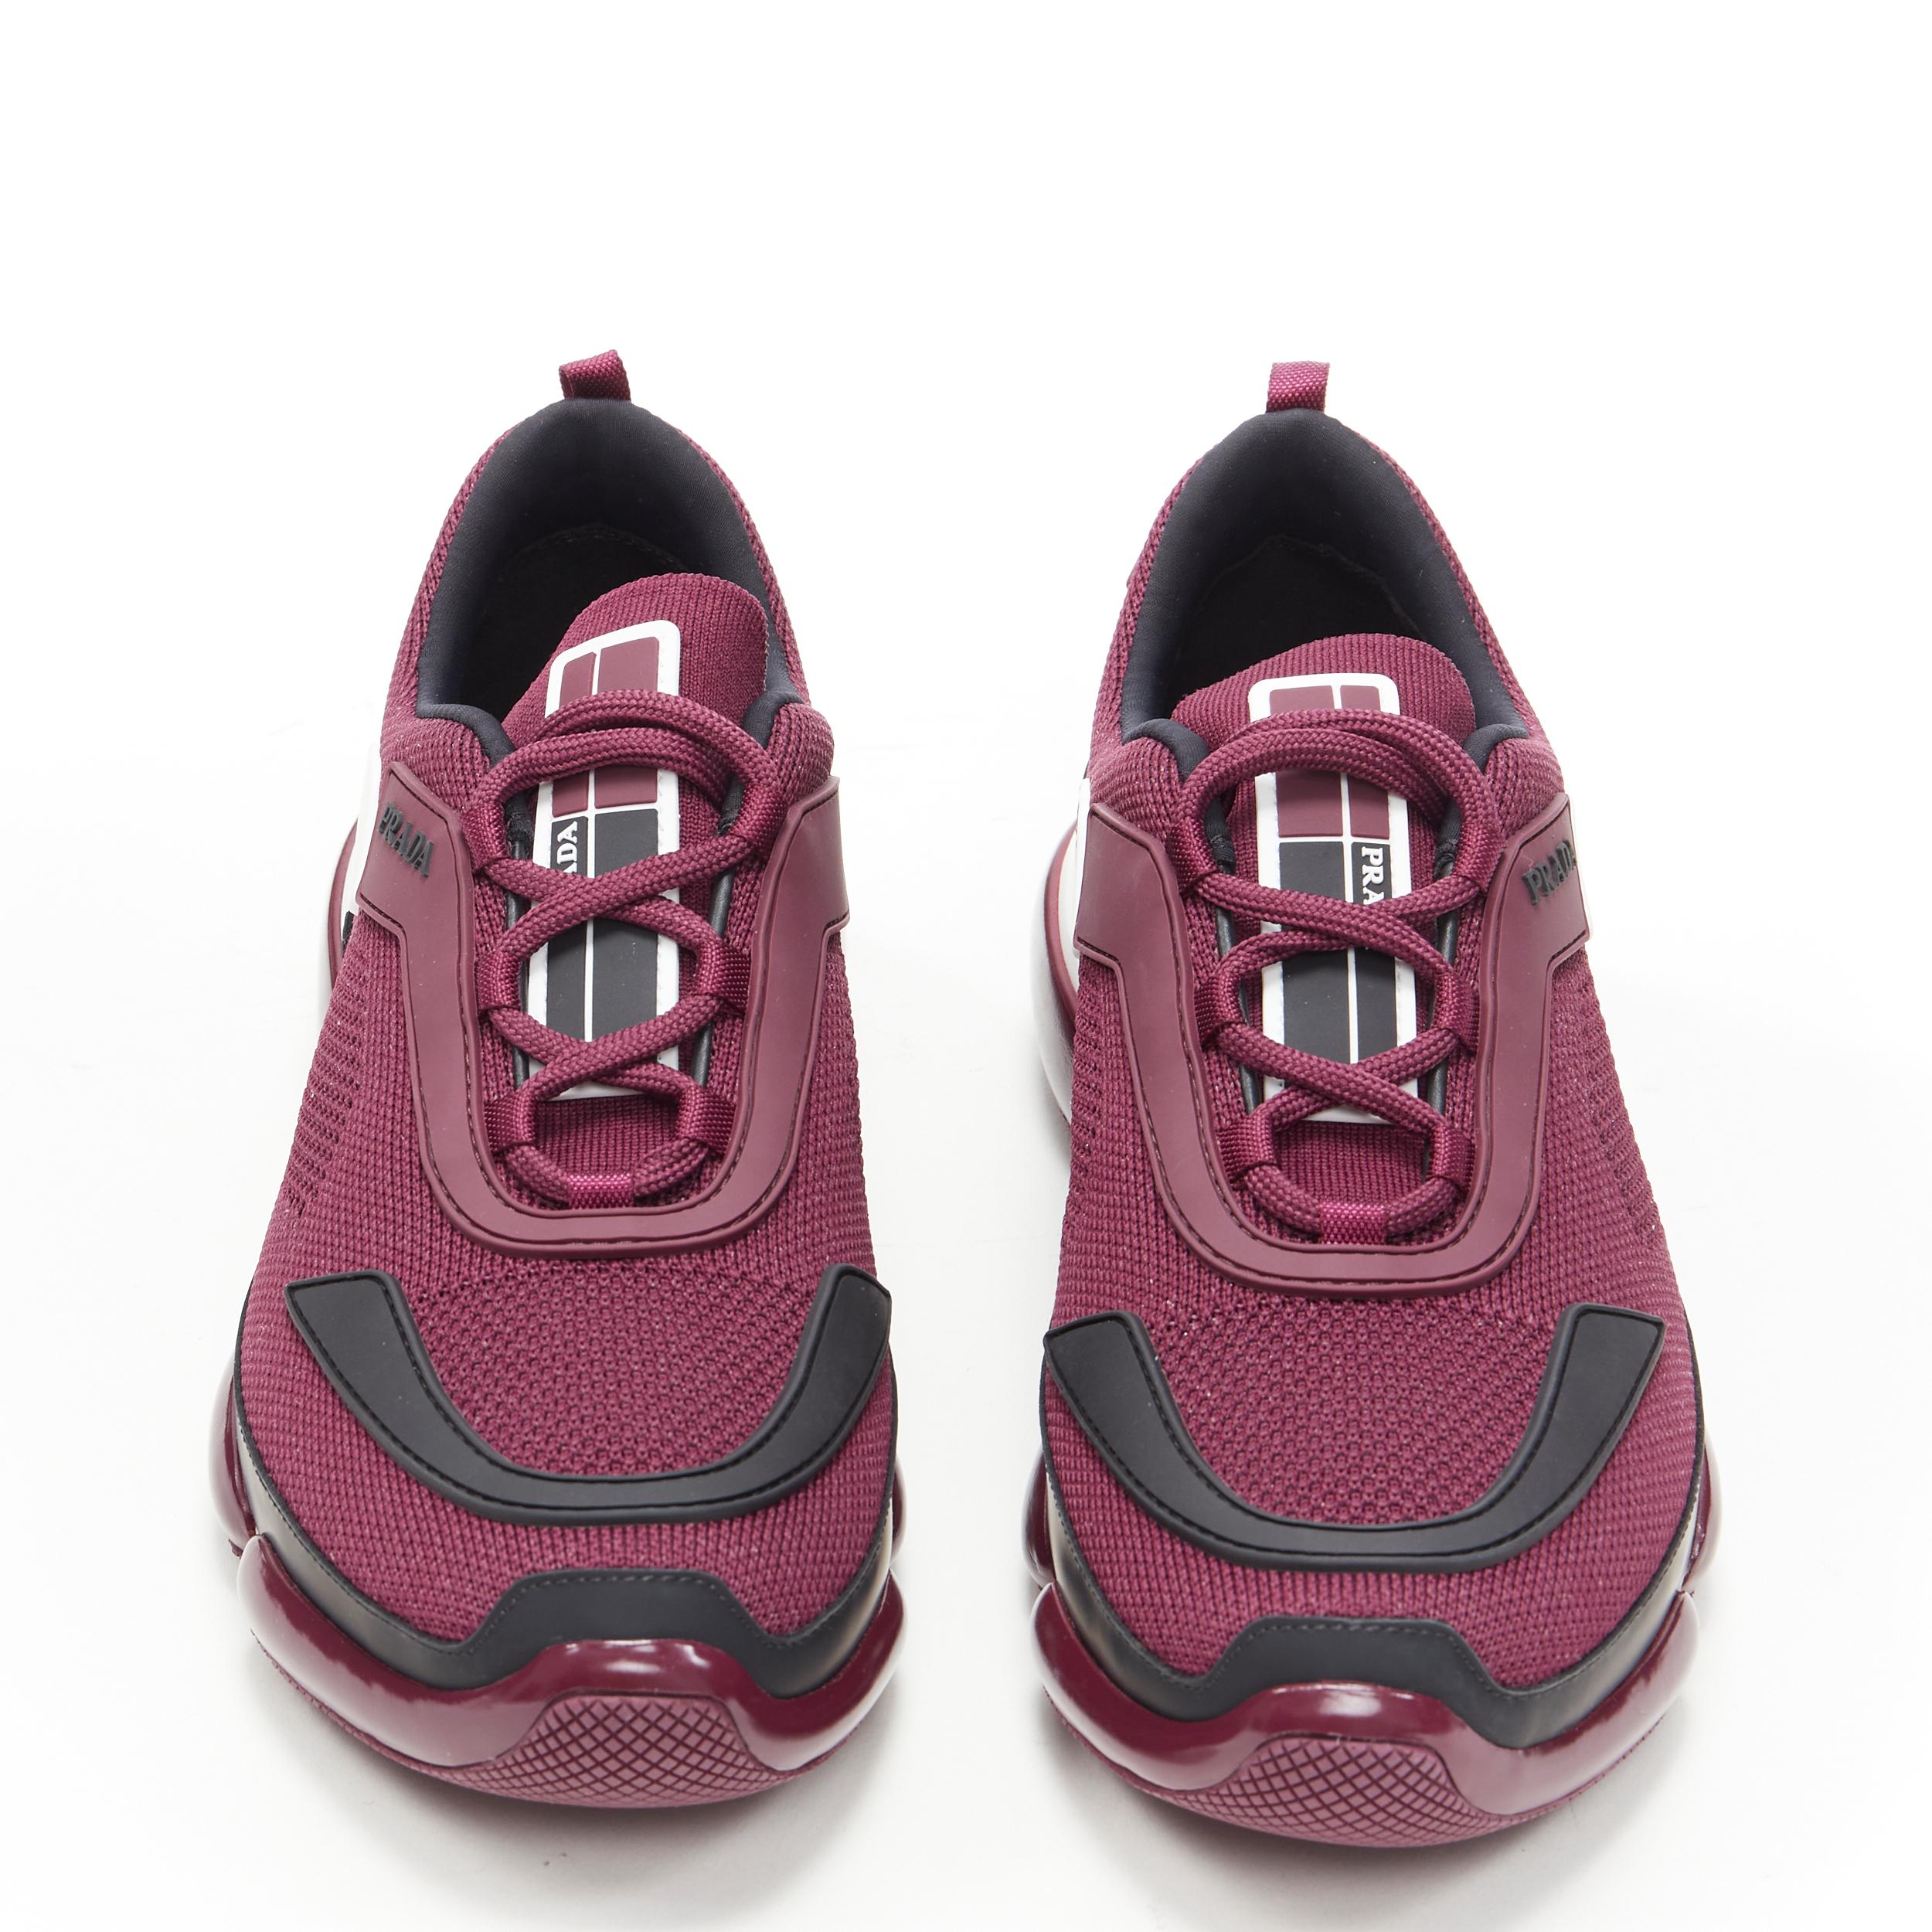 burgundy prada sneakers